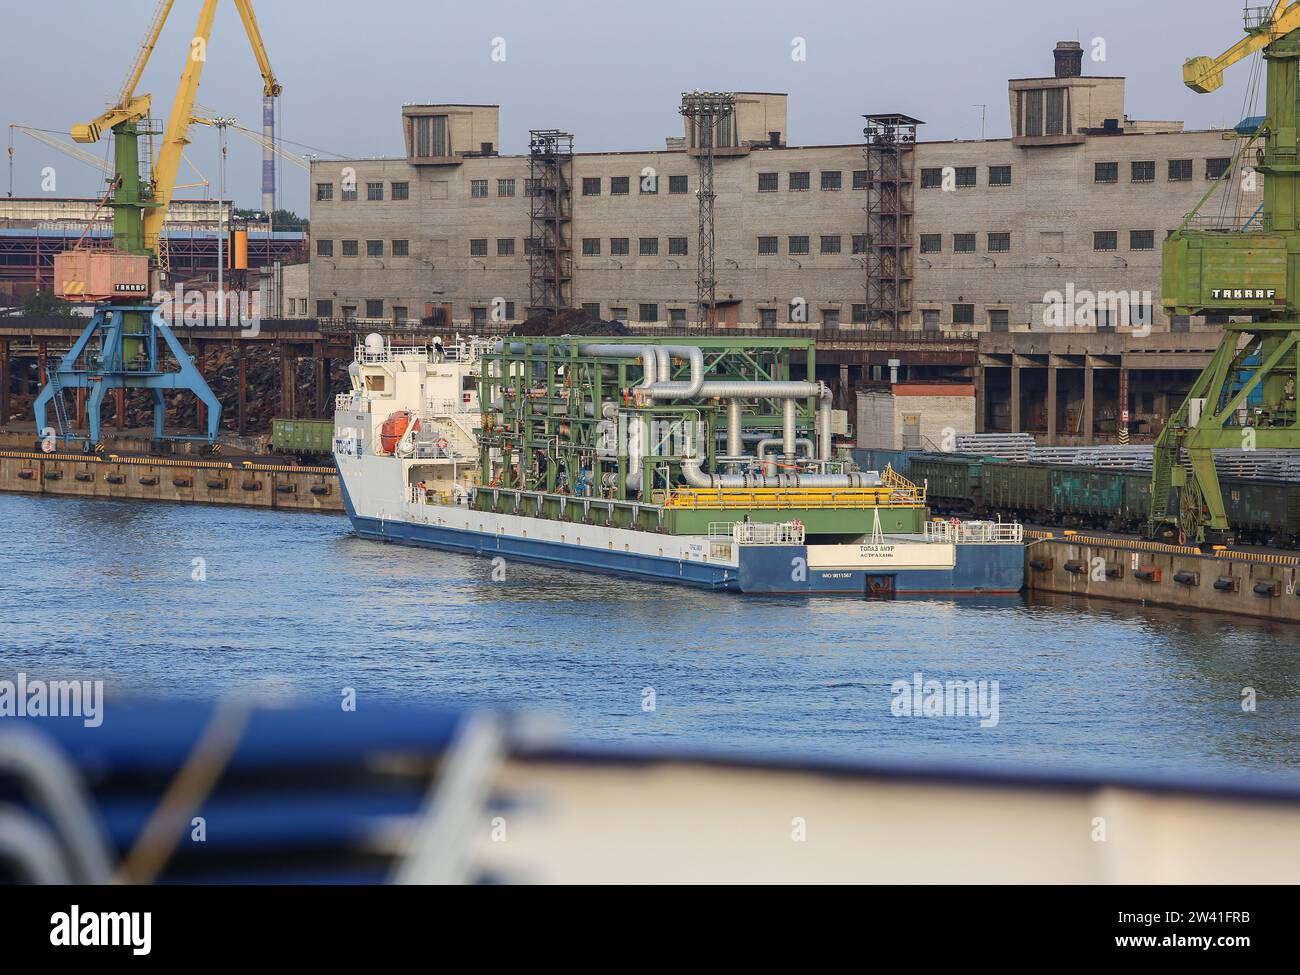 P&O Maritime Logistics Multifunktionsmodule Trägerschiff Topaz Amur für Schweröl- und Gasmodul, Kasachstan Ölfelder, Tengiz Ölfeld Stockfoto